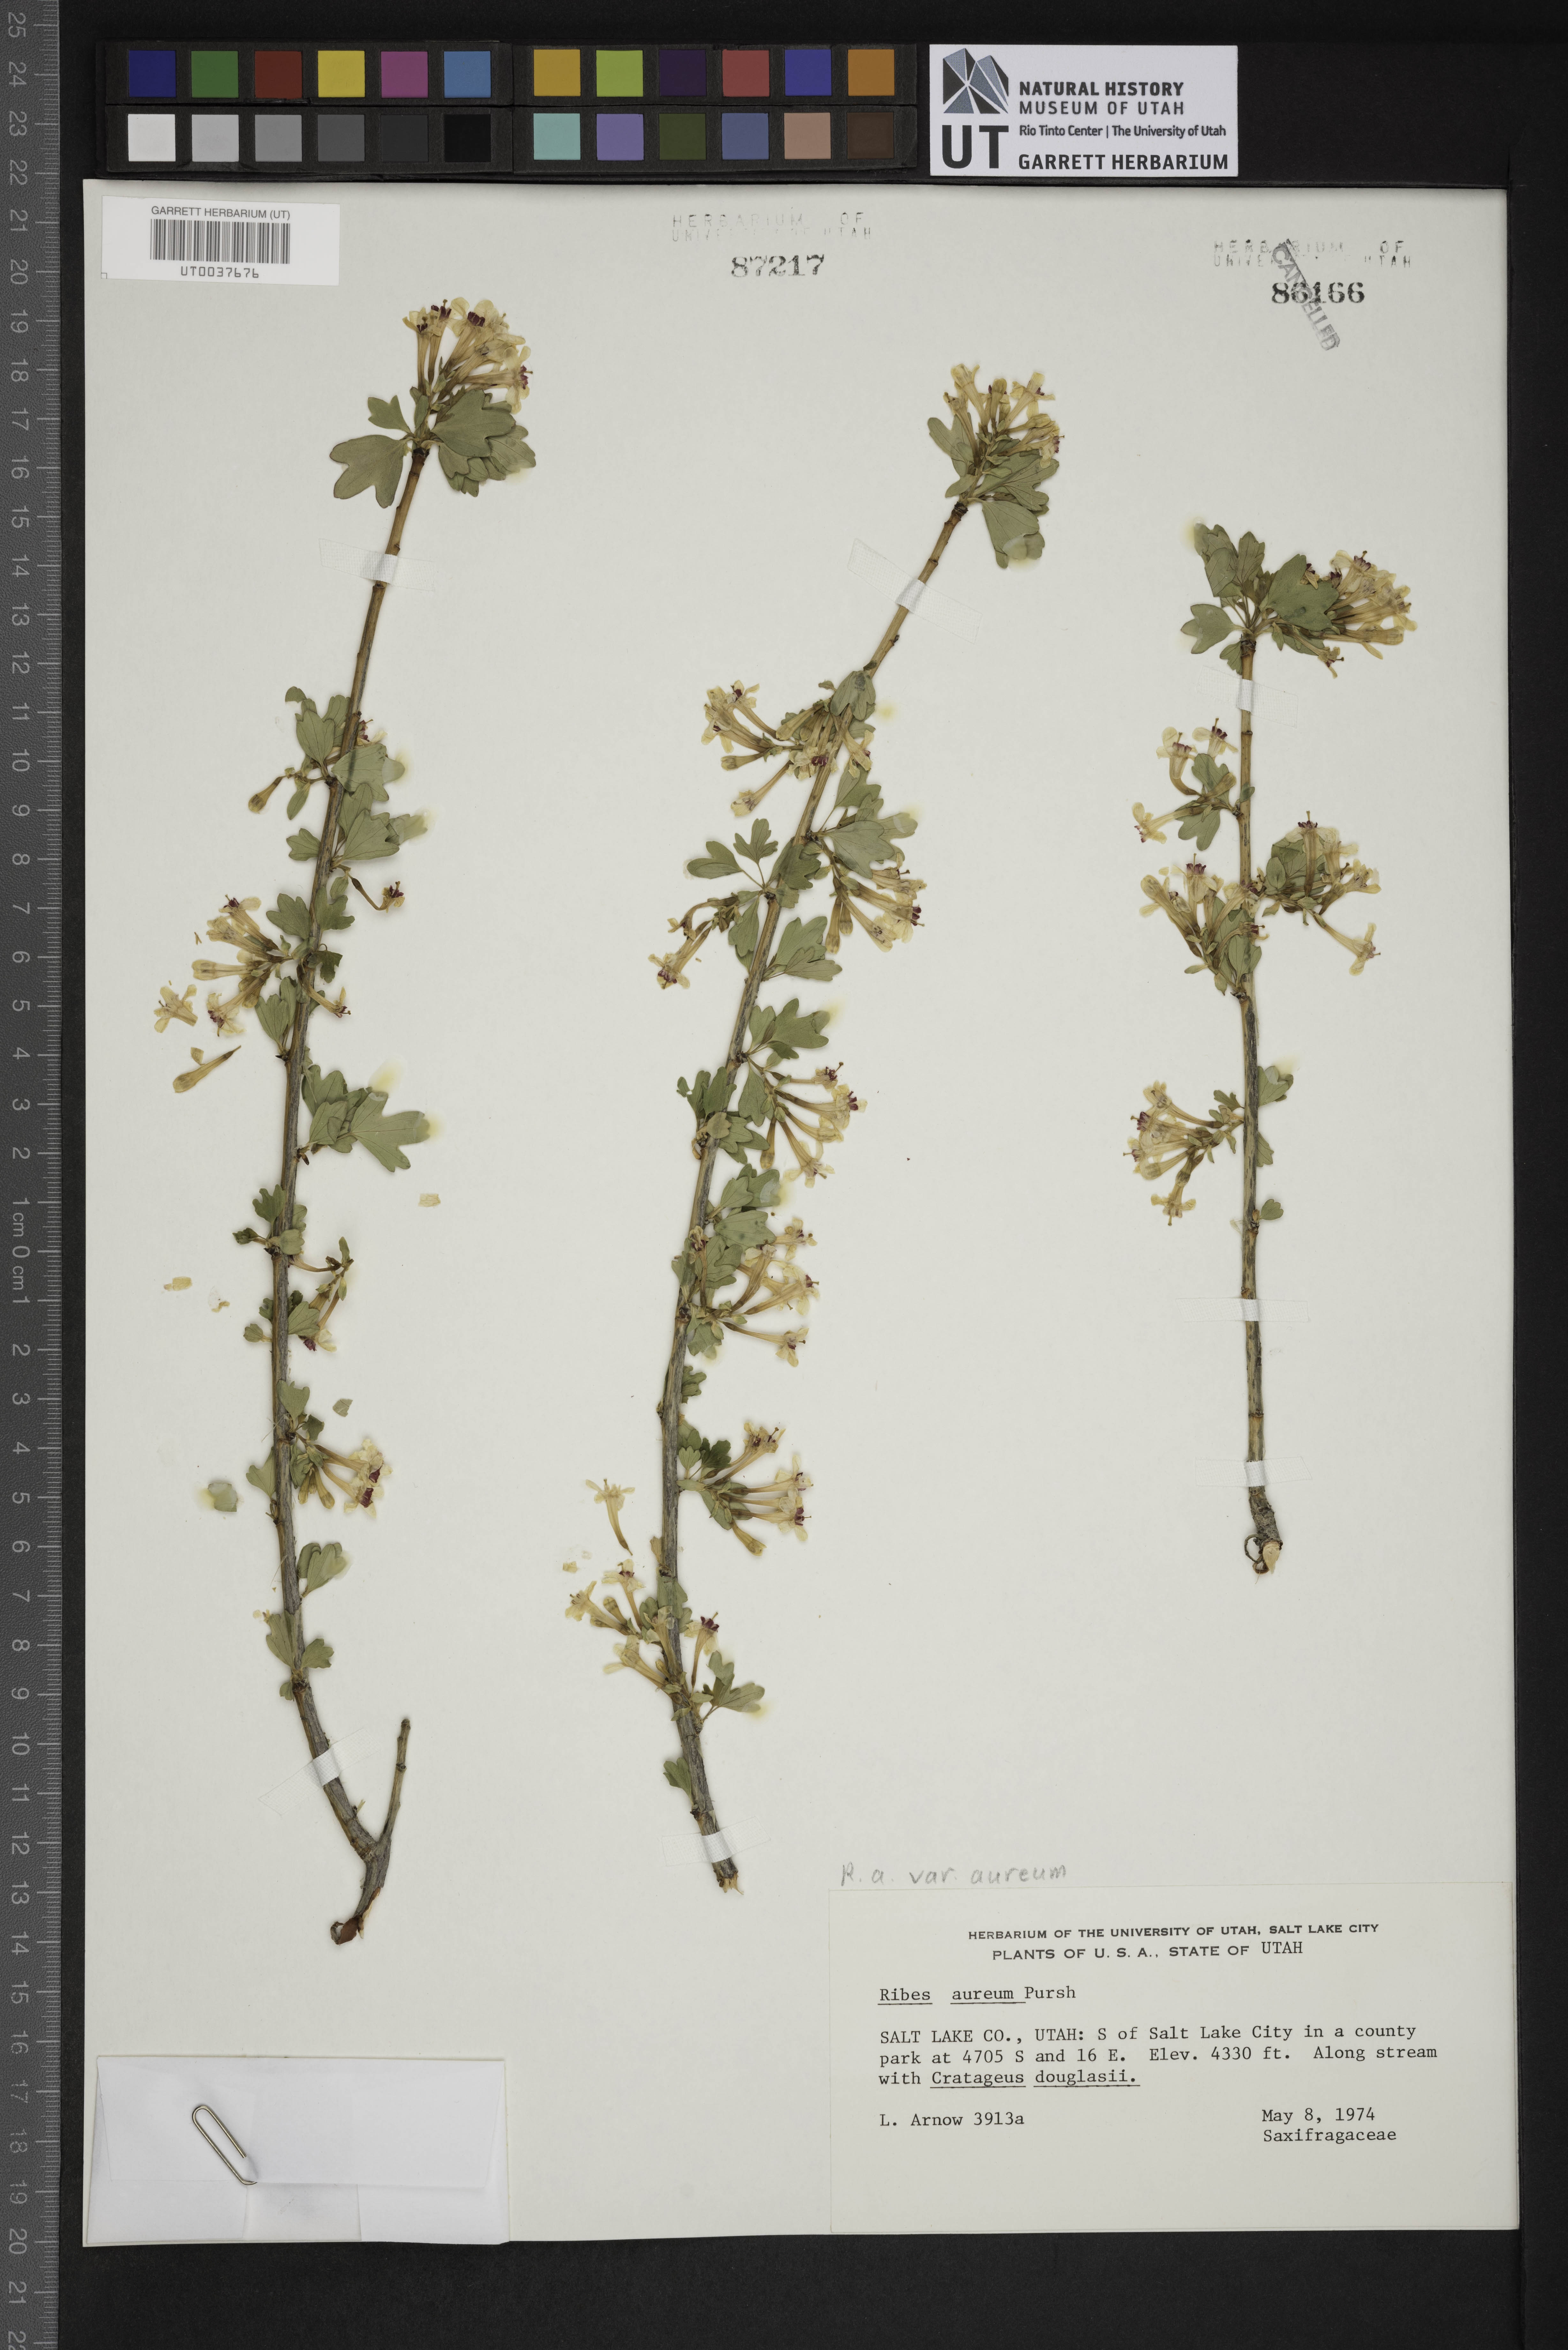 Ribes aureum var. aureum image